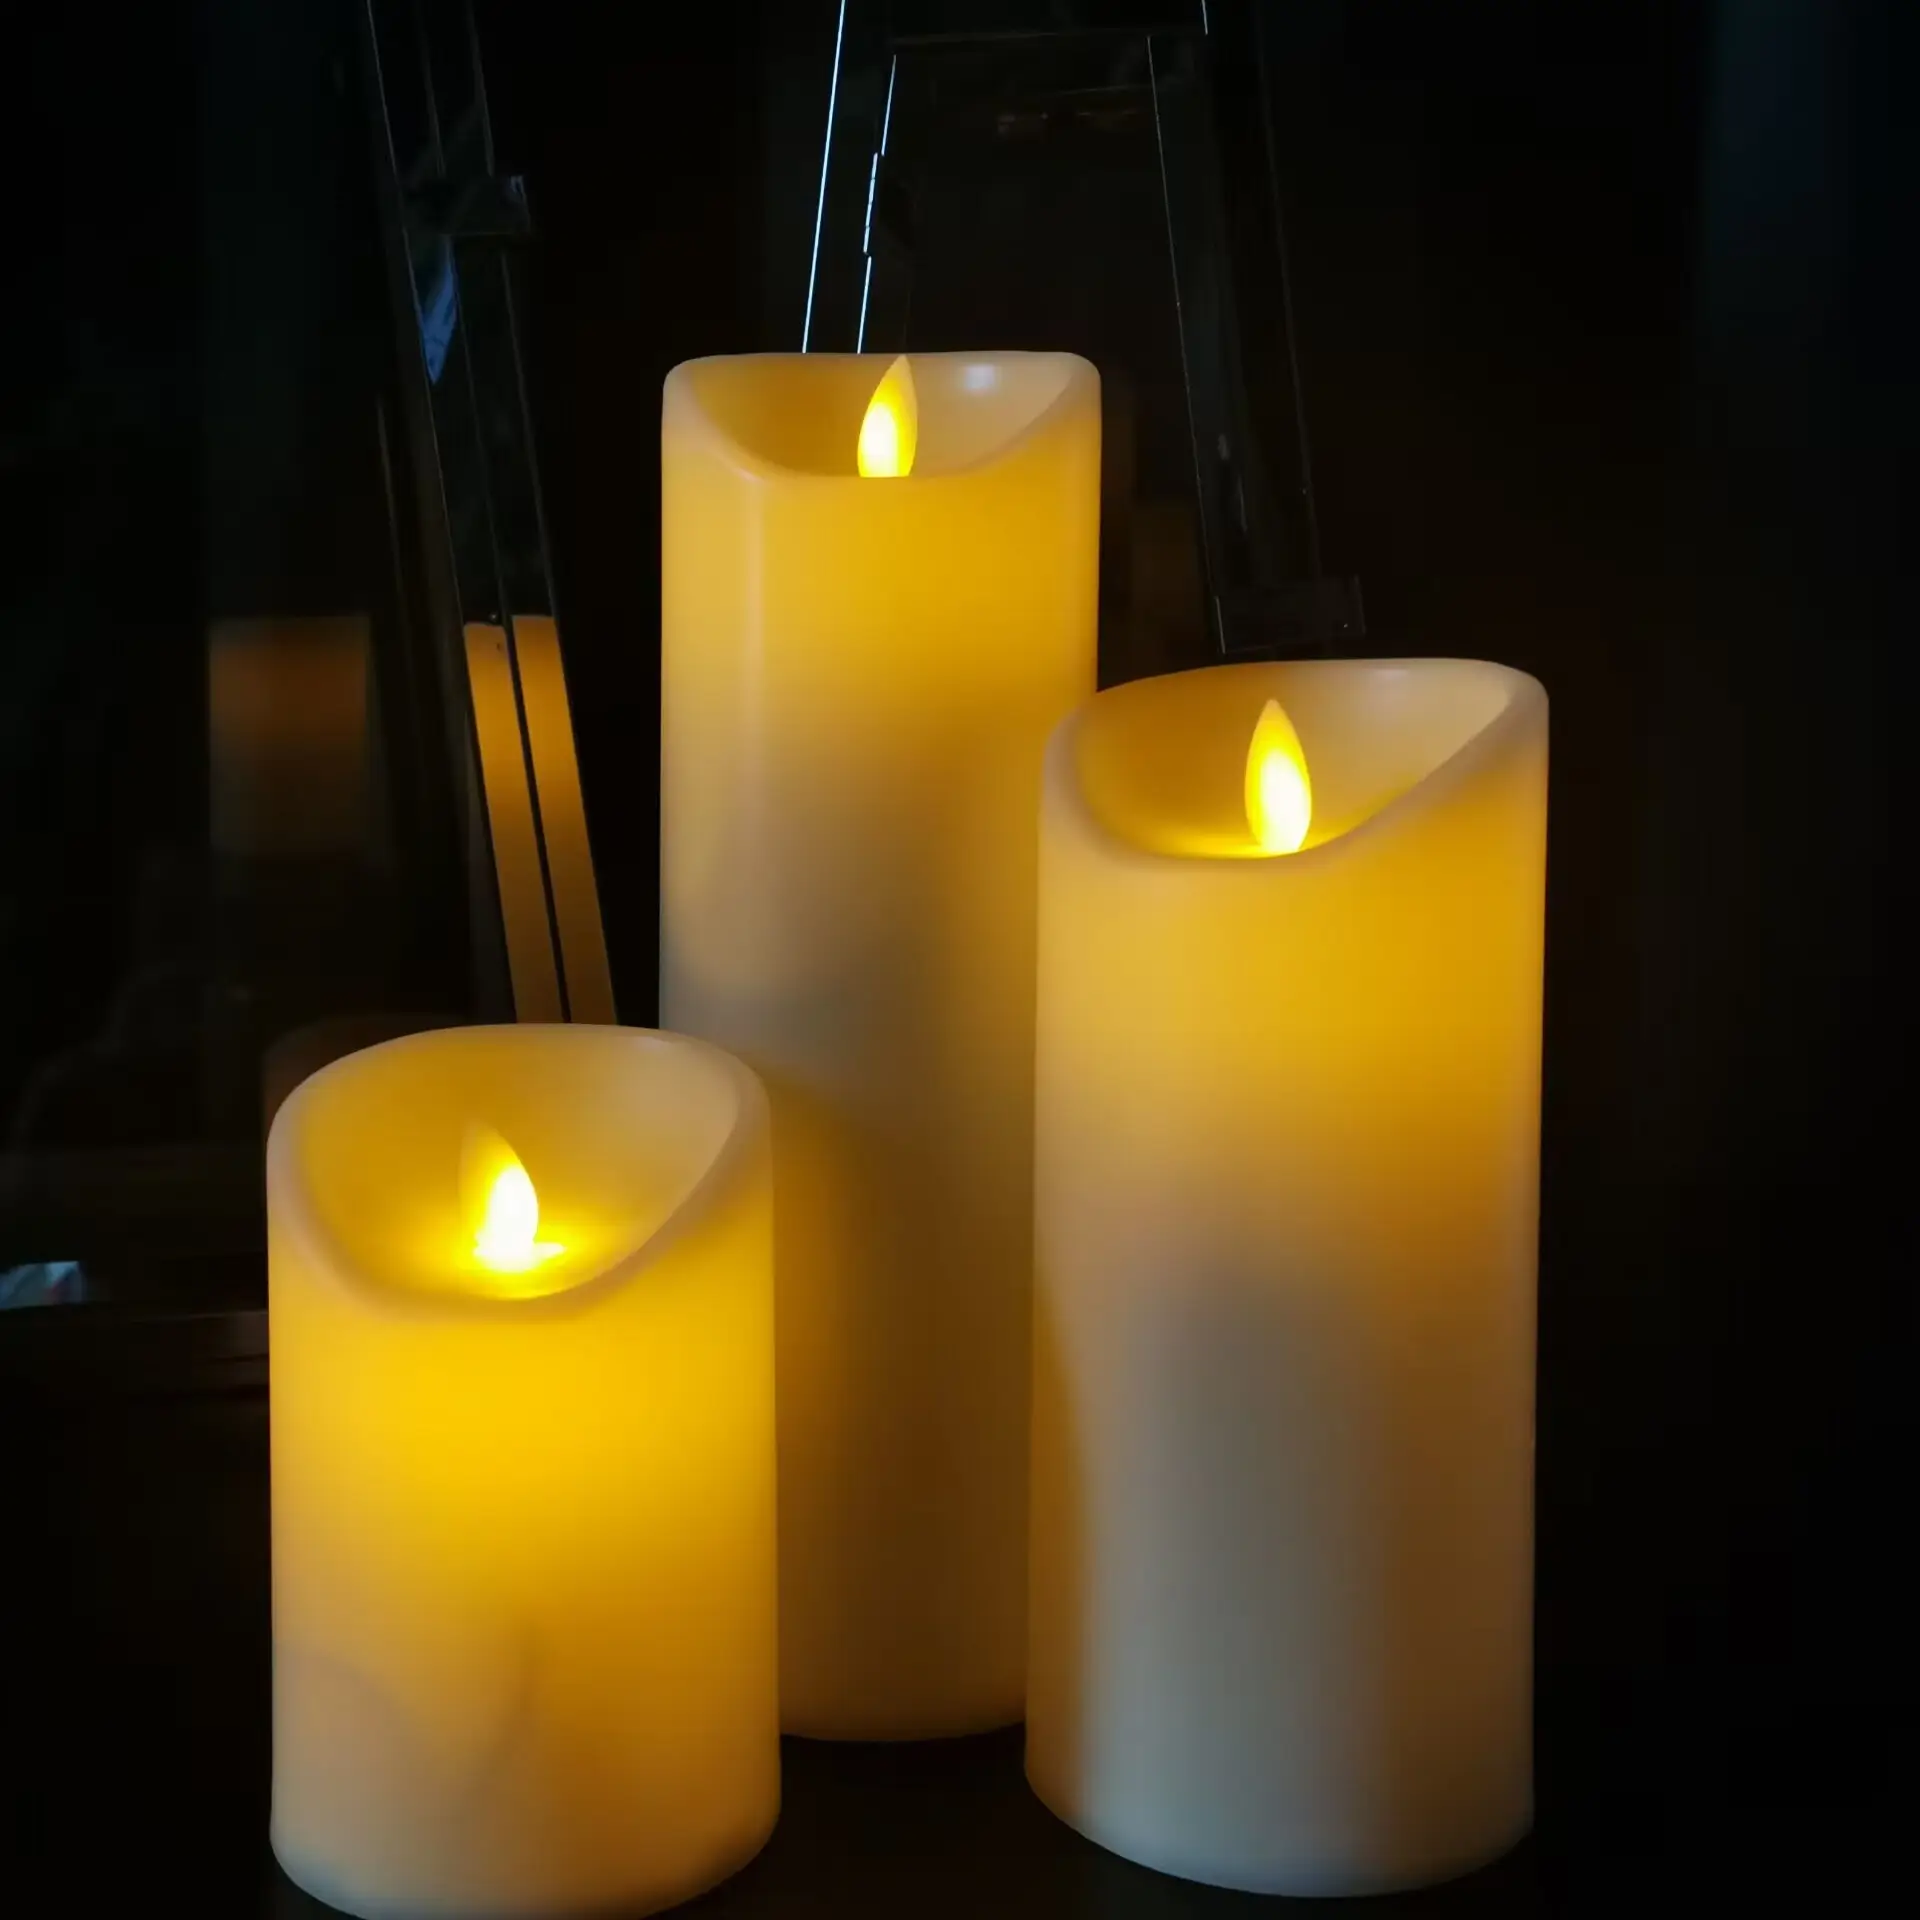 Velas Led de tamaño personalizable, juego de velas de llama móvil, velas Led artificiales decorativas para cumpleaños y vacaciones con control remoto